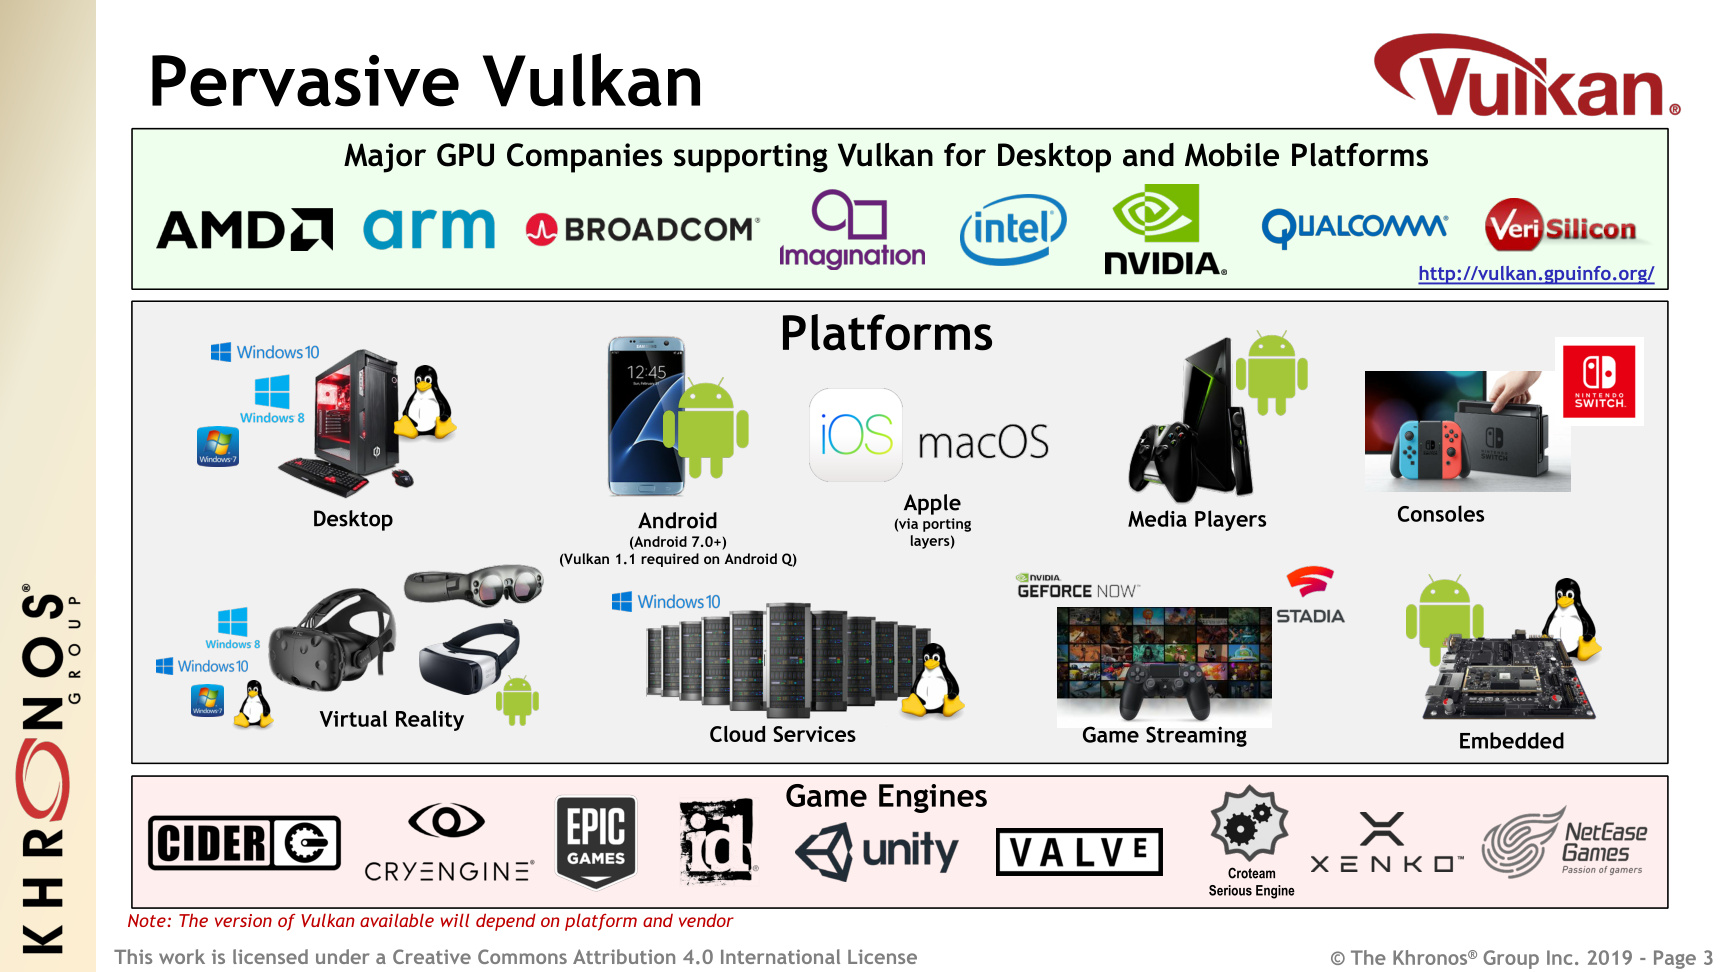 Dank neuer Funktionen und breitem Hardware-Support möchte Vulkan 1.2 viele Plattformen bedienen